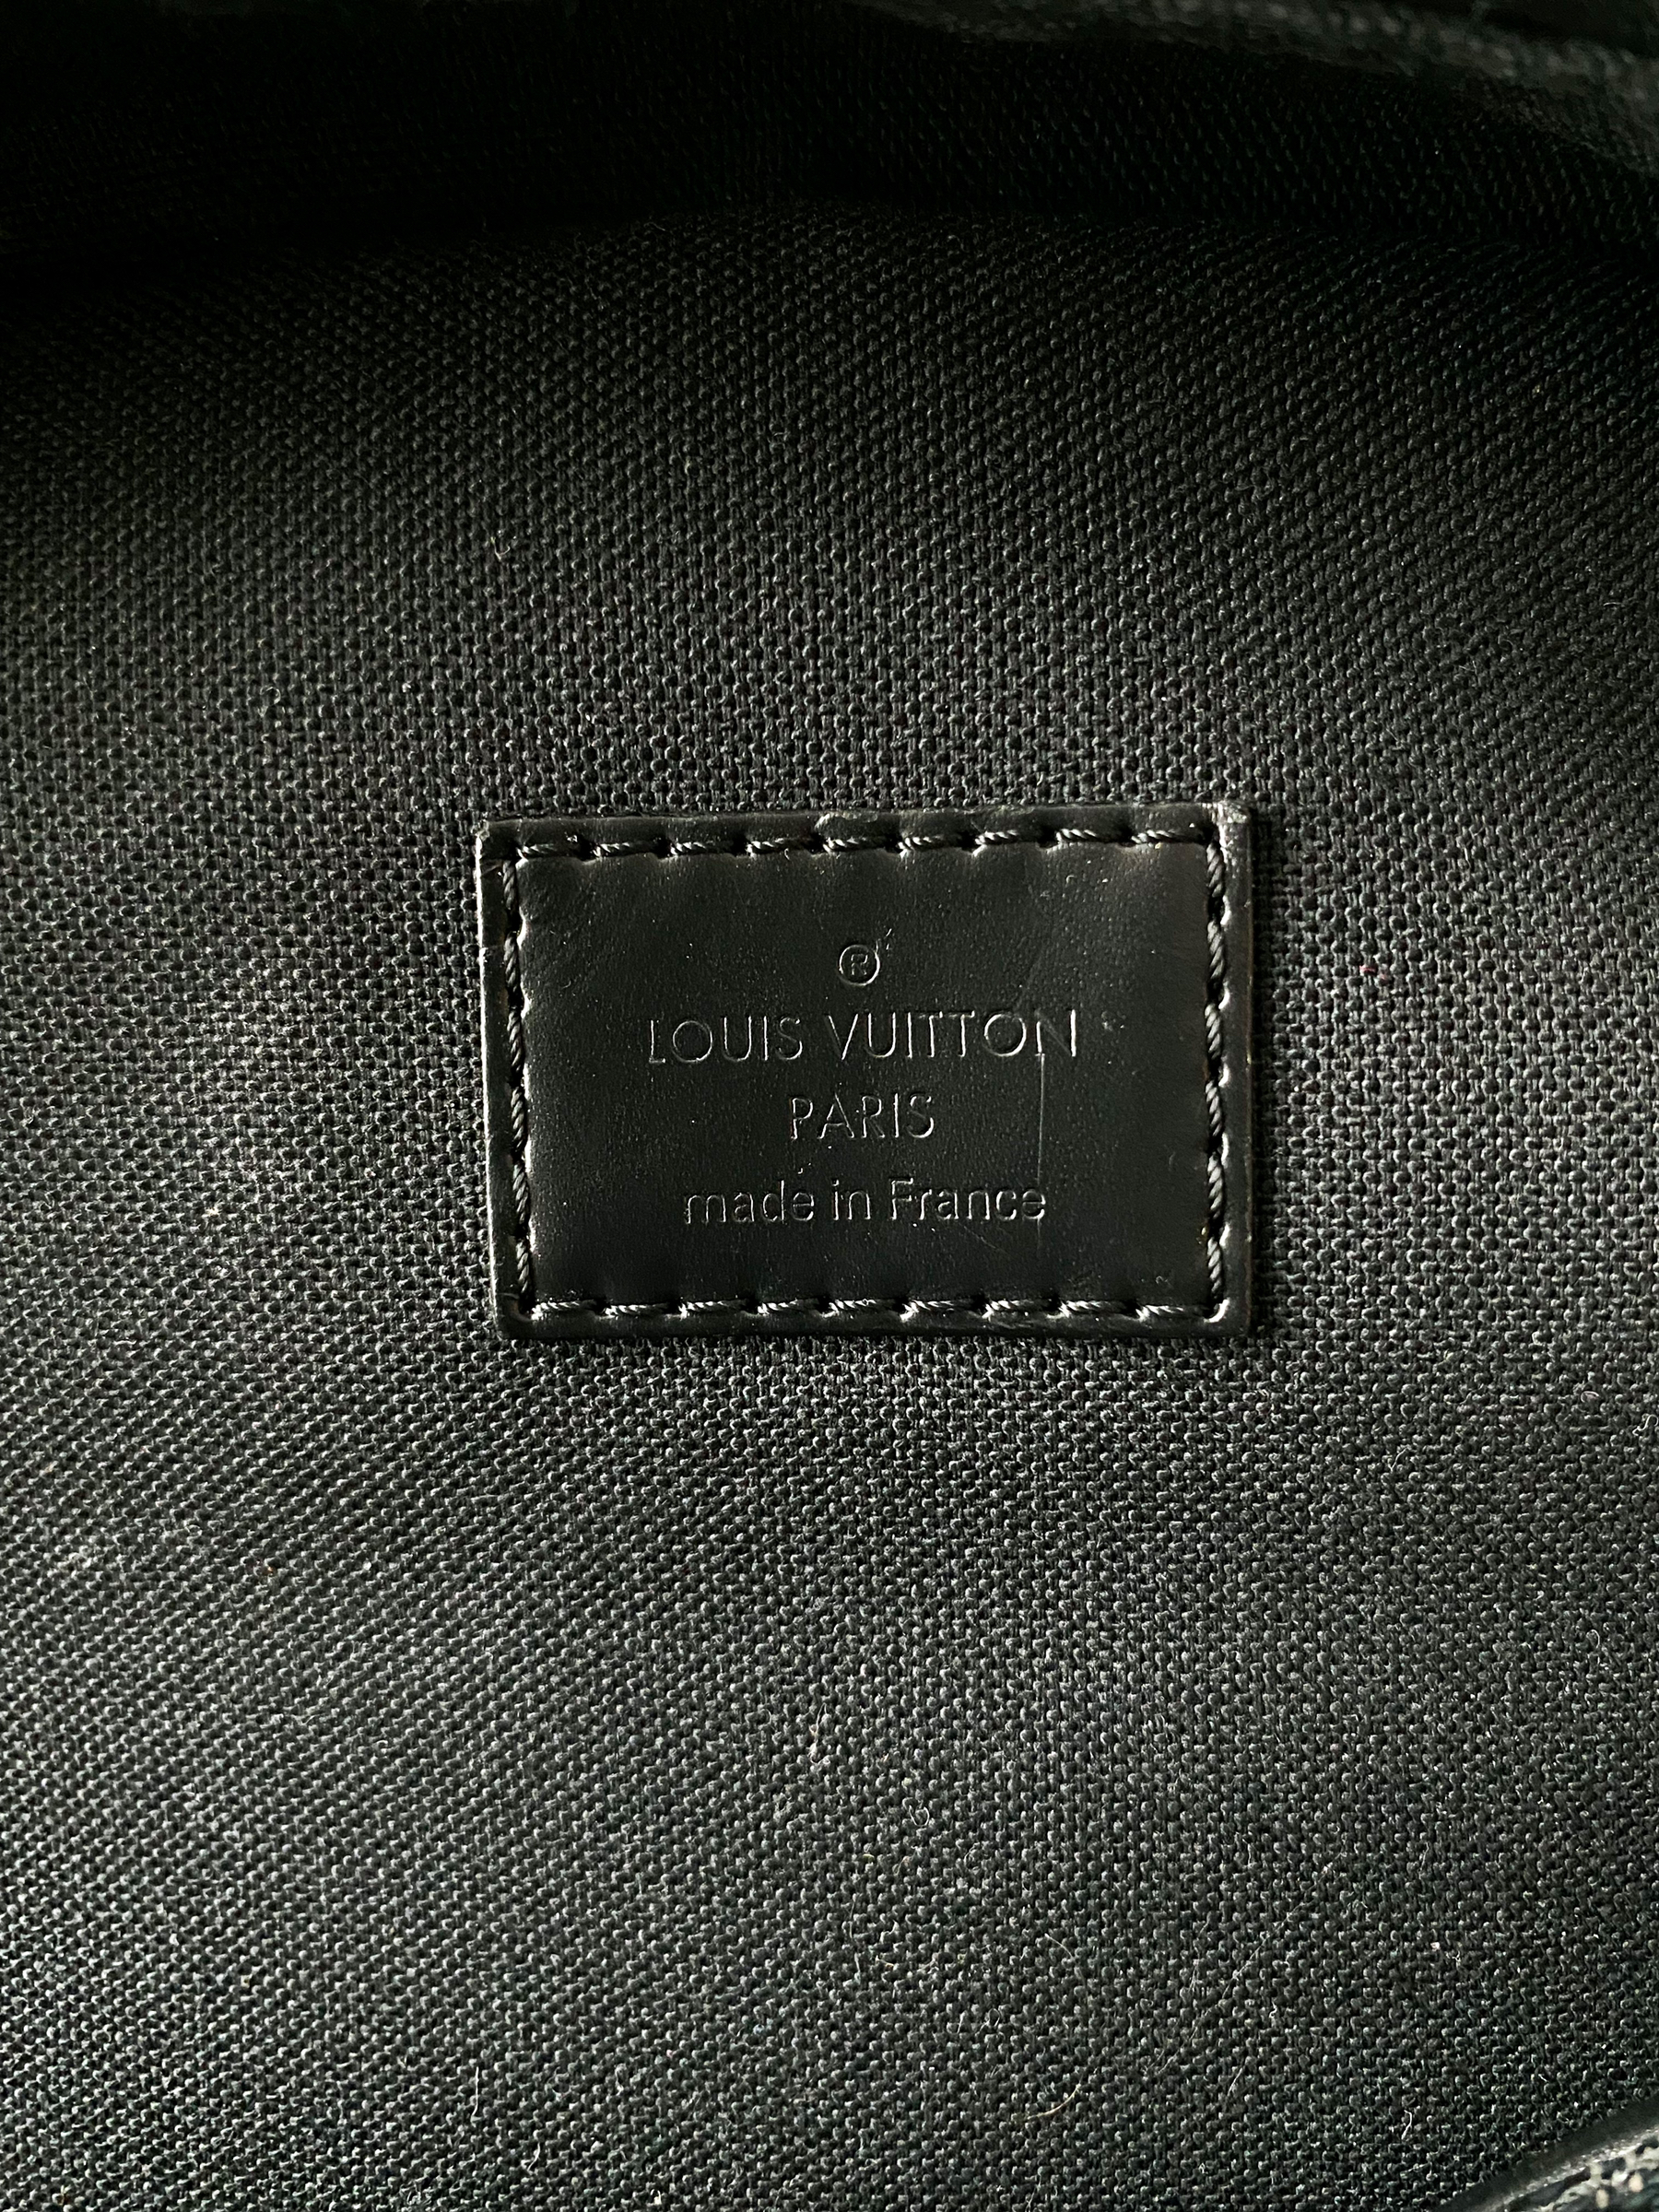 100% Authentic Louis Vuitton Damier Graphite Michael - Depop